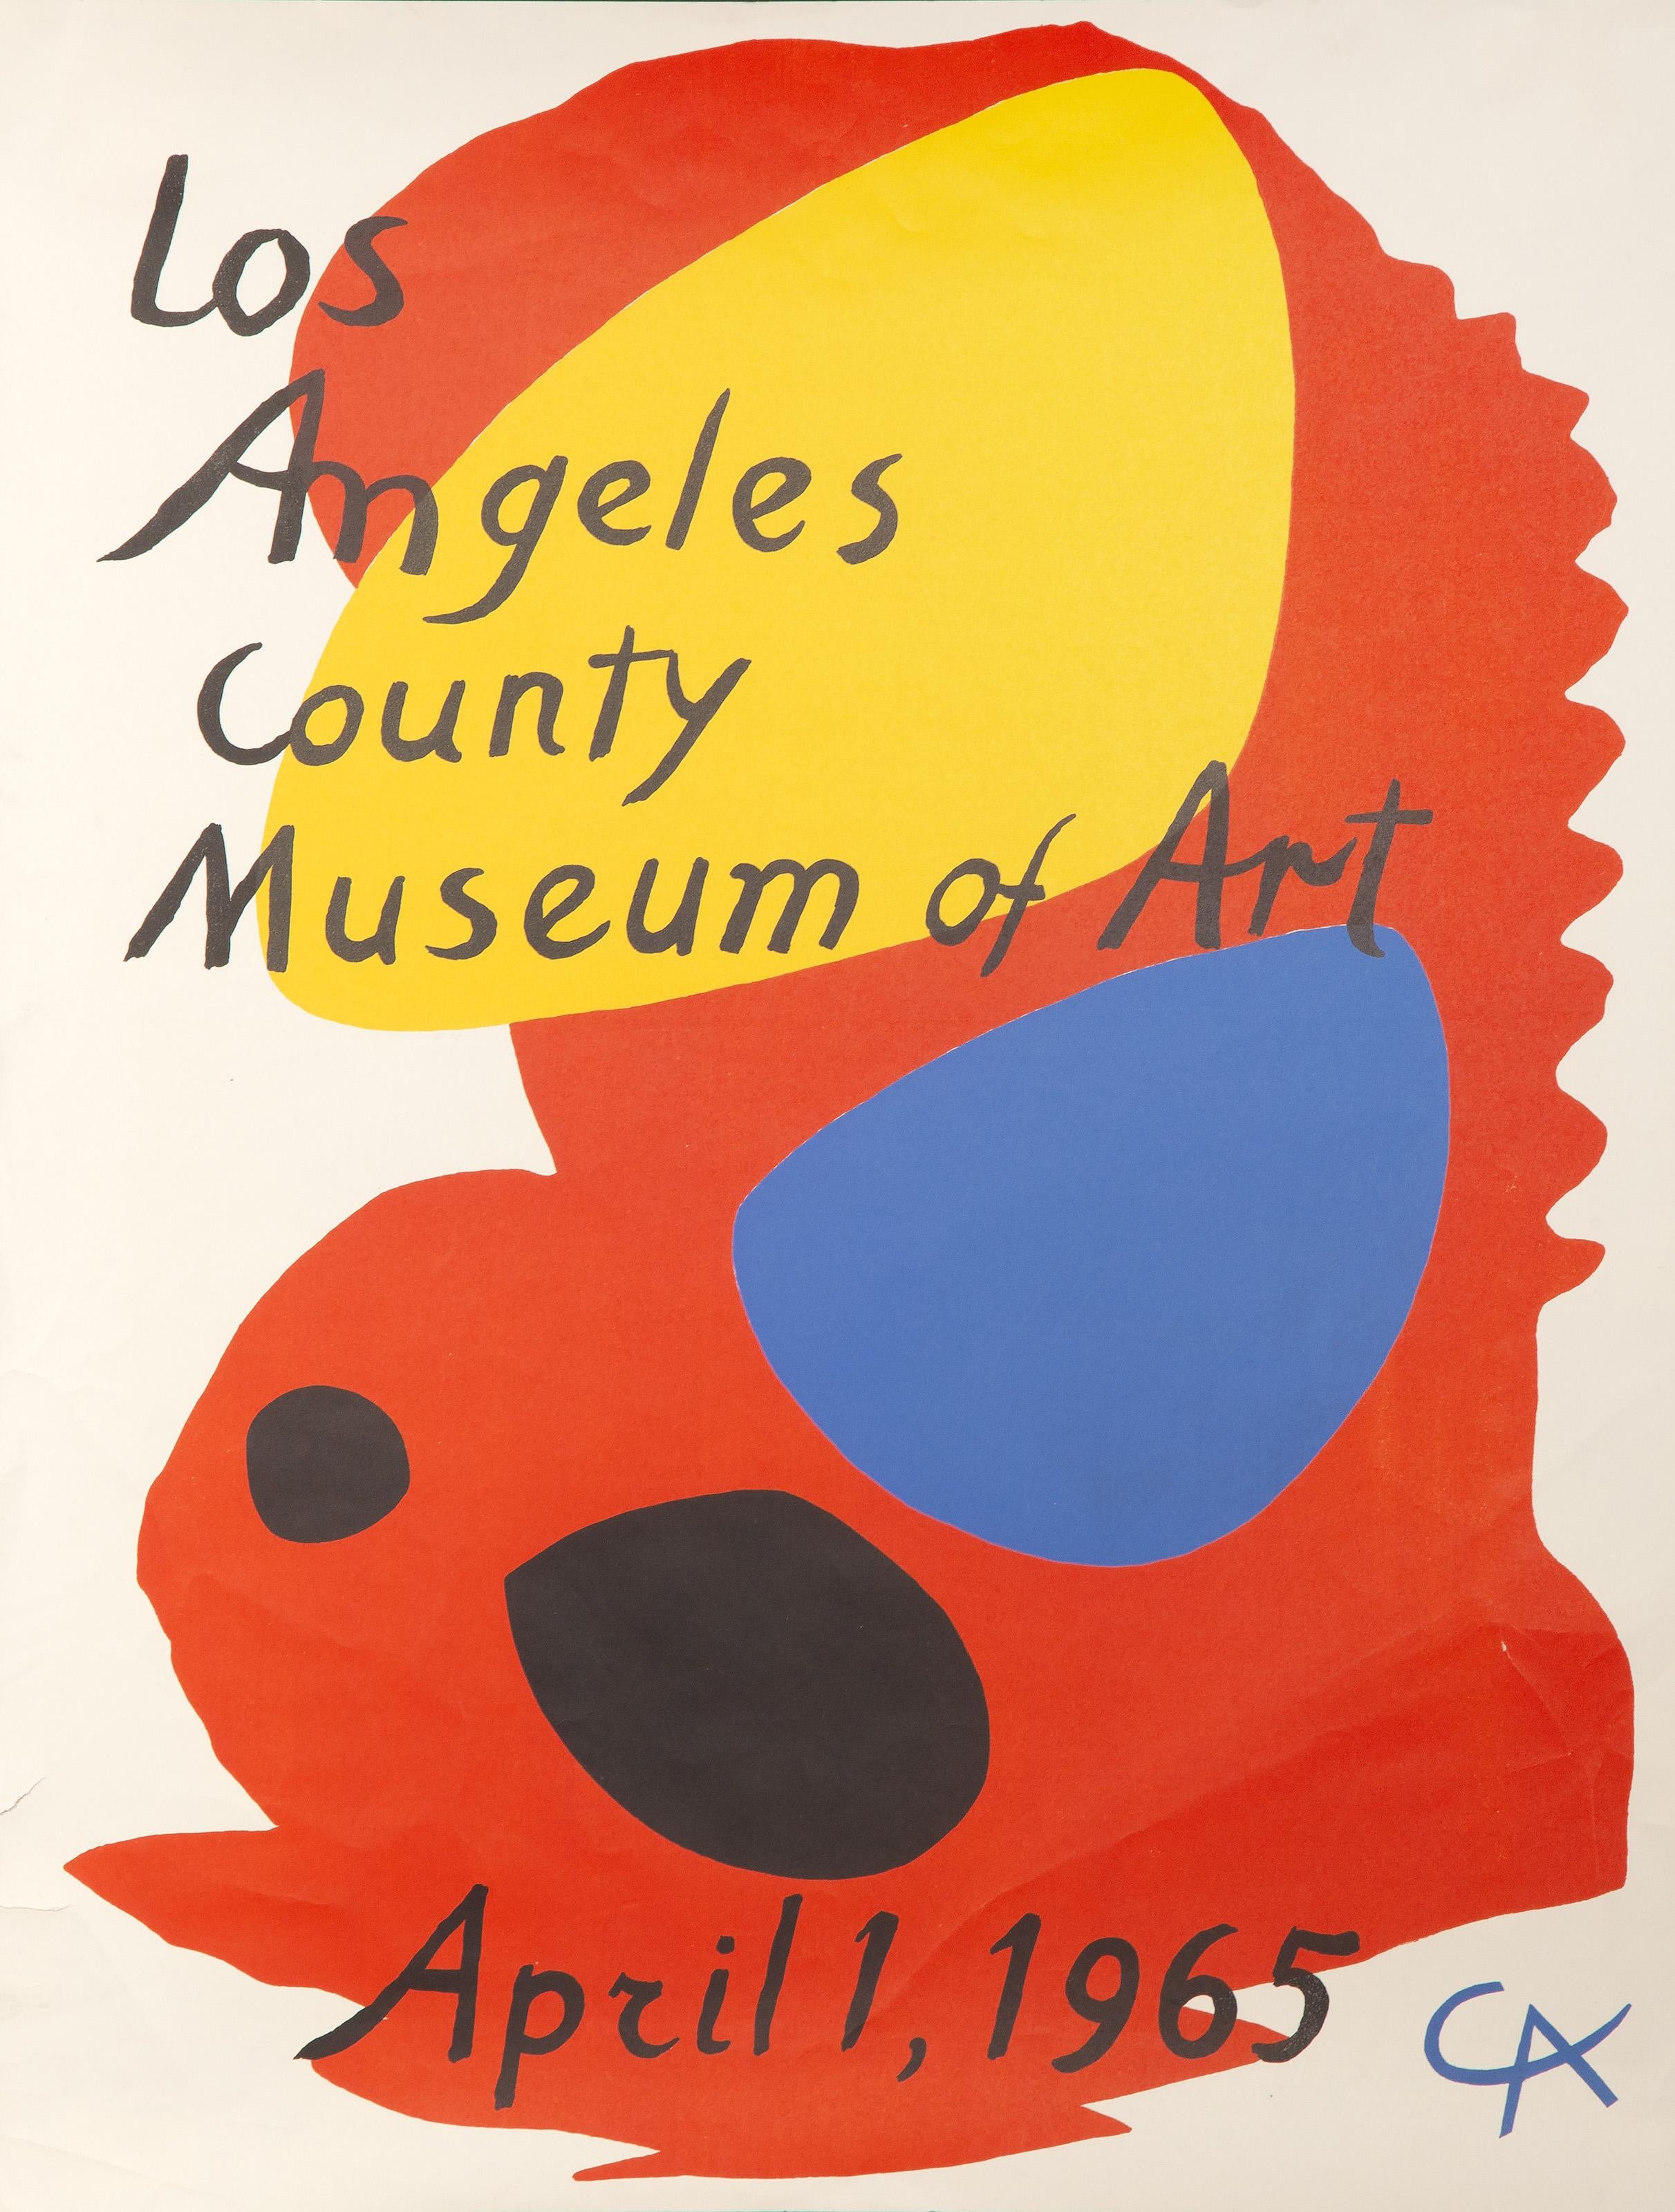 Affiche lithographique d'Alexander Calder pour le Los Angeles County Museum of Art (LACMA), réalisée en 1965. La composition dynamique est signée et datée dans la plaque.

Affiche d'exposition : Musée d'art du comté de Los Angeles
Alexander Calder,